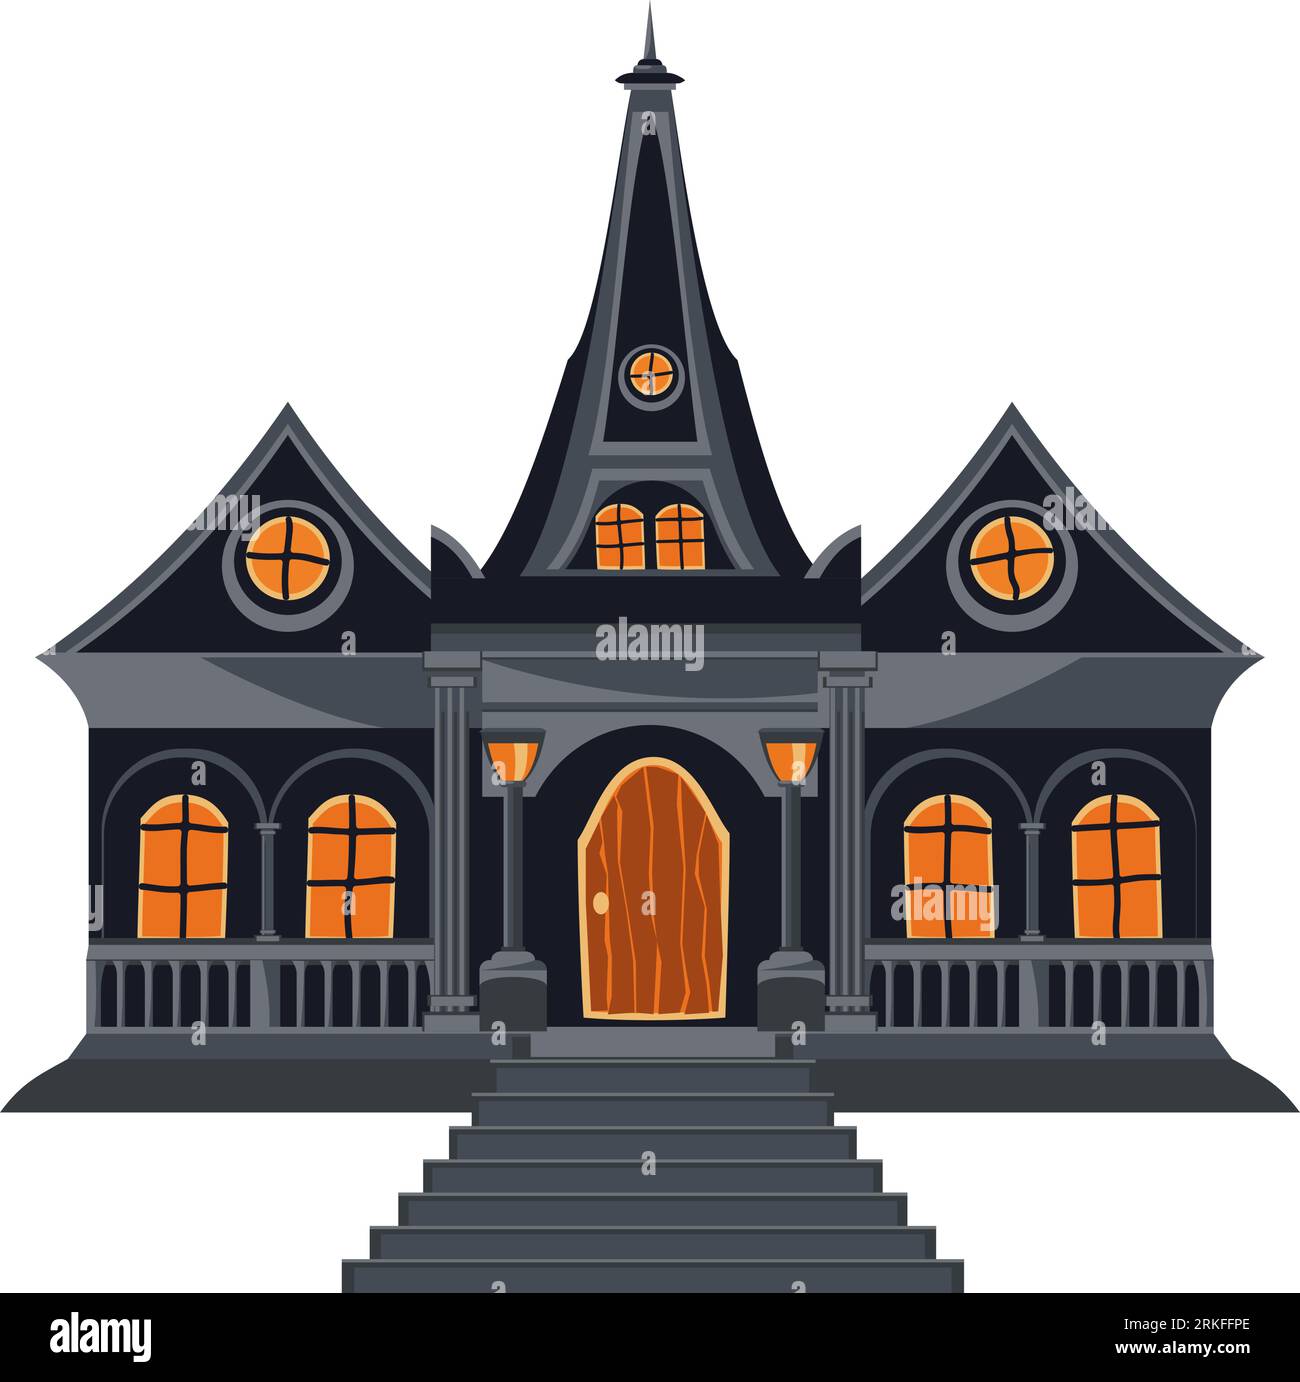 Halloween-Haus in grauer Farbe mit Treppen, Fenstern und Eingangstür. Abgeschiedenes altes Spukhaus in flachem Stil. Gotische Cartoon-Architektur. Vektor Stock Vektor